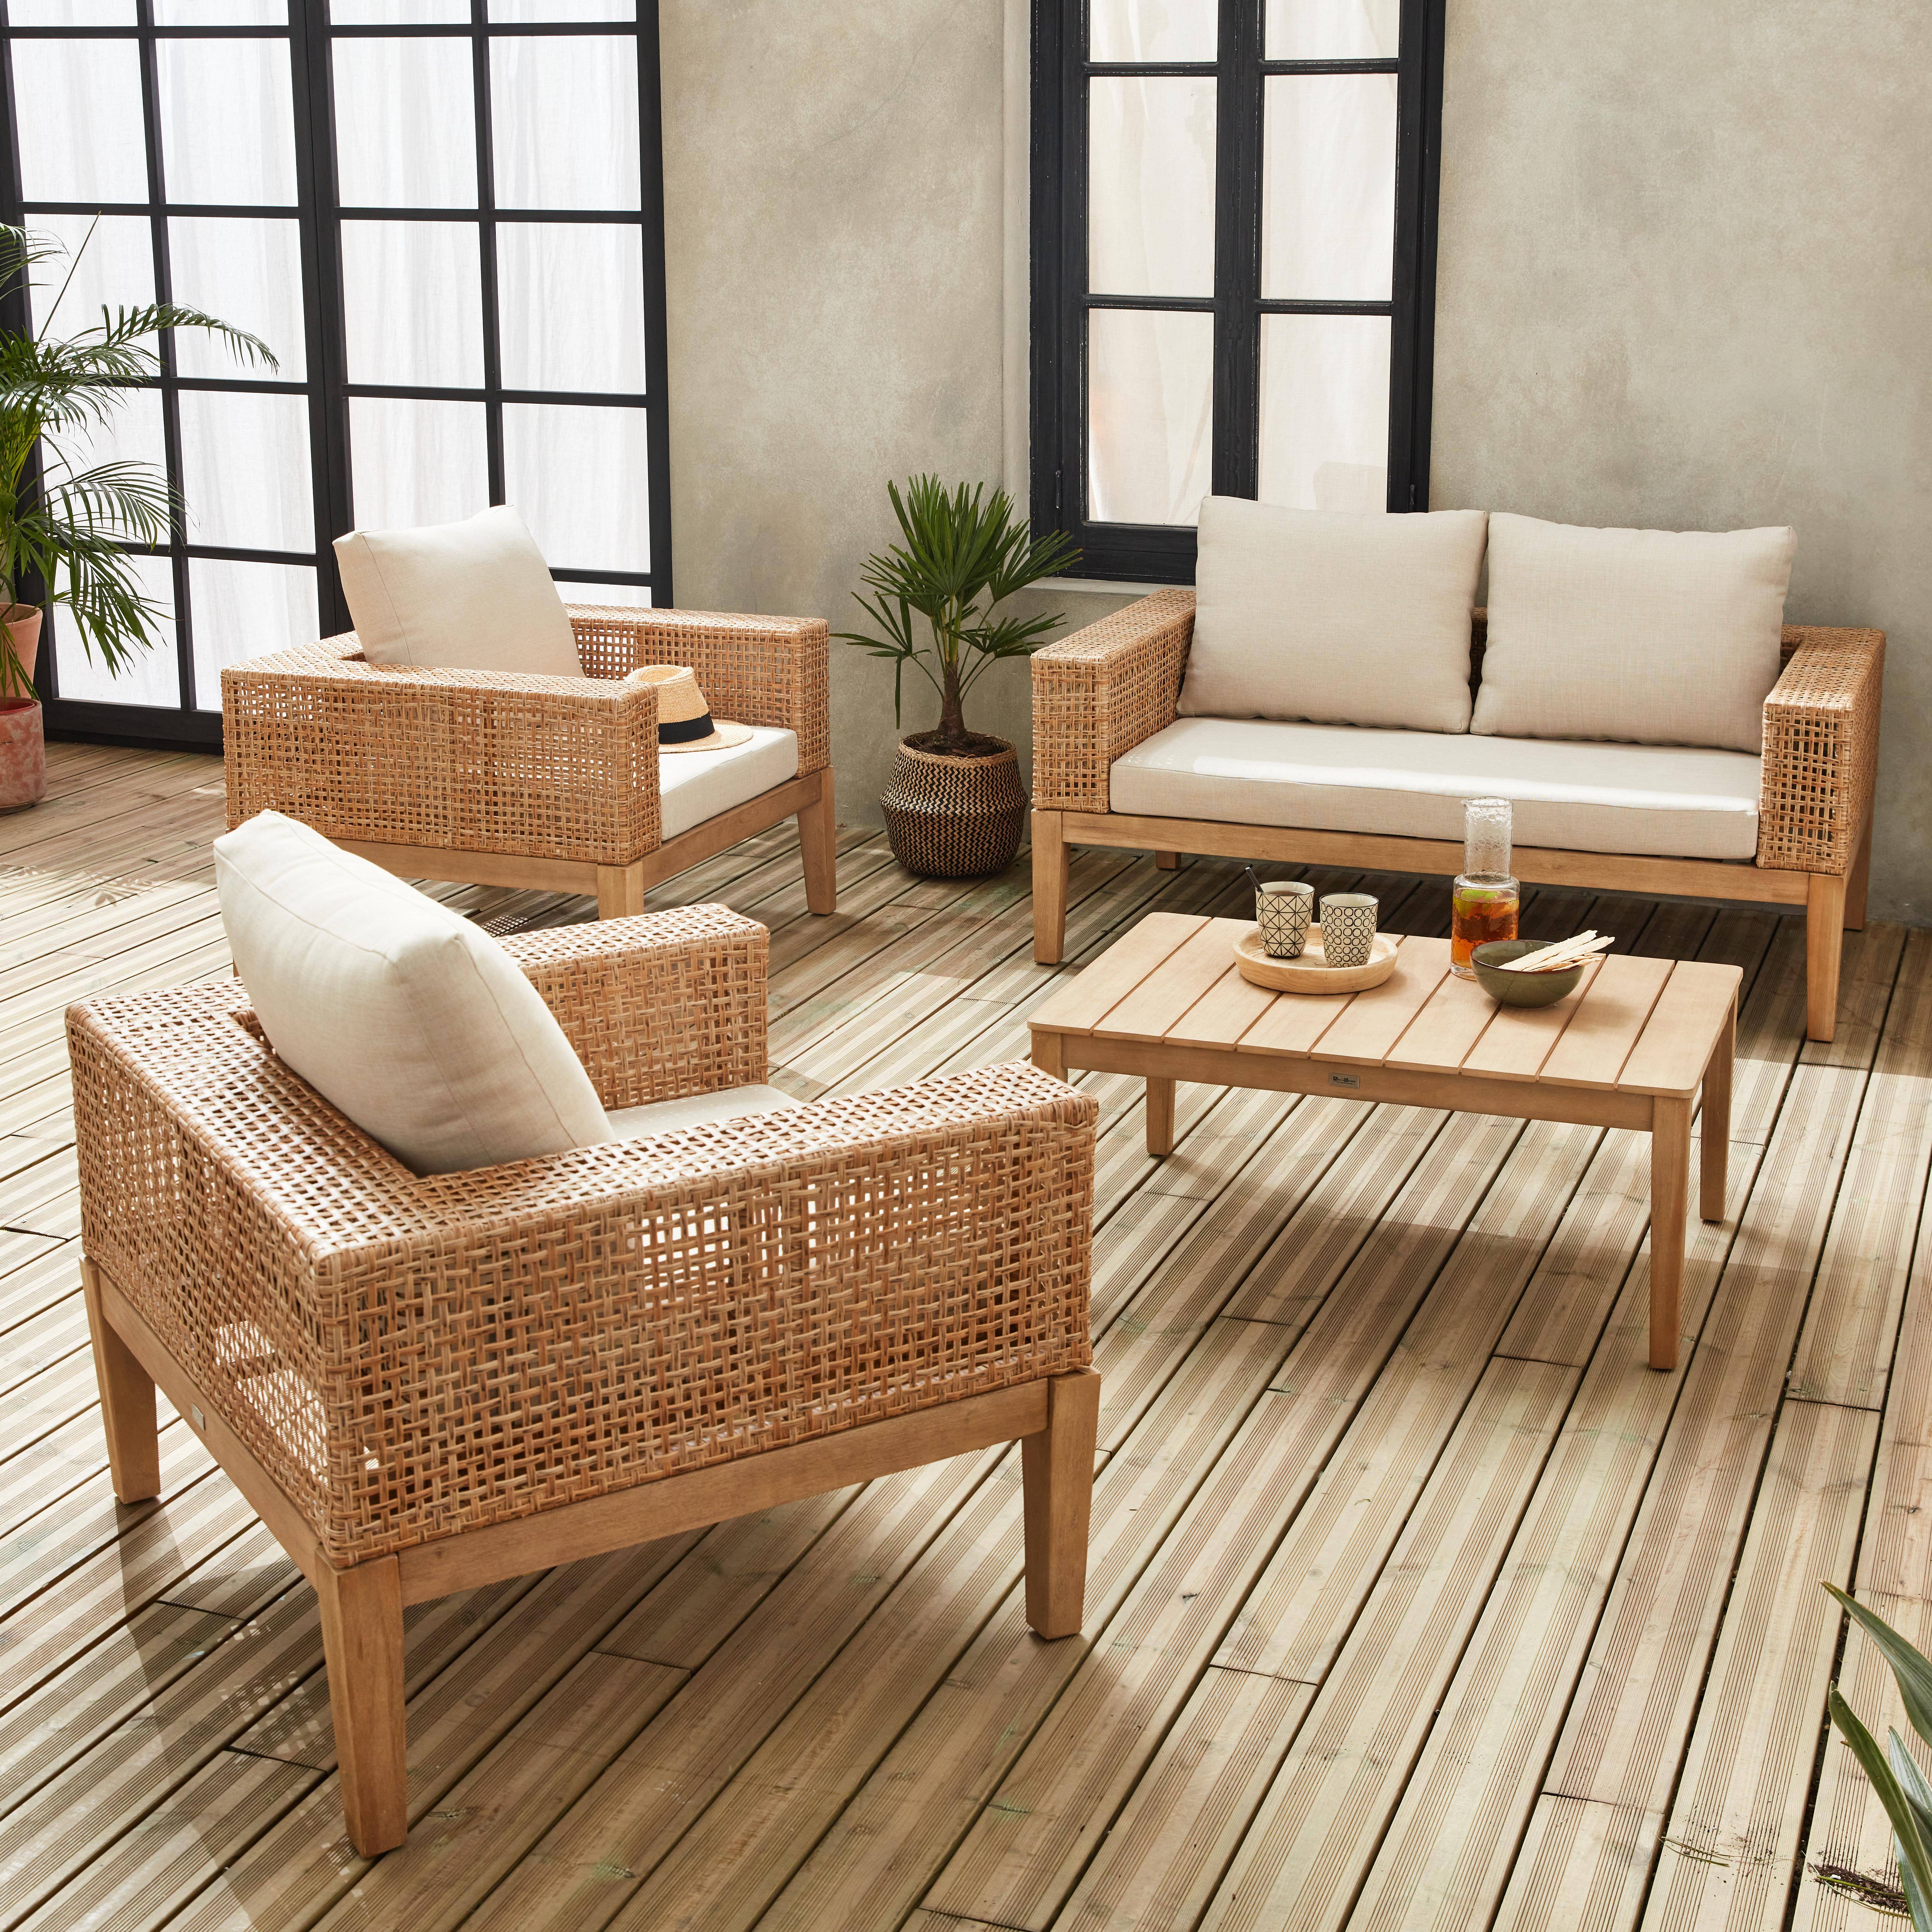 Gartenmöbel Olinda, Rohrgeflecht und Holz, 4-Sitzer, beige, FSC Akazienholz, gebürstet, gebleicht,sweeek,Photo2